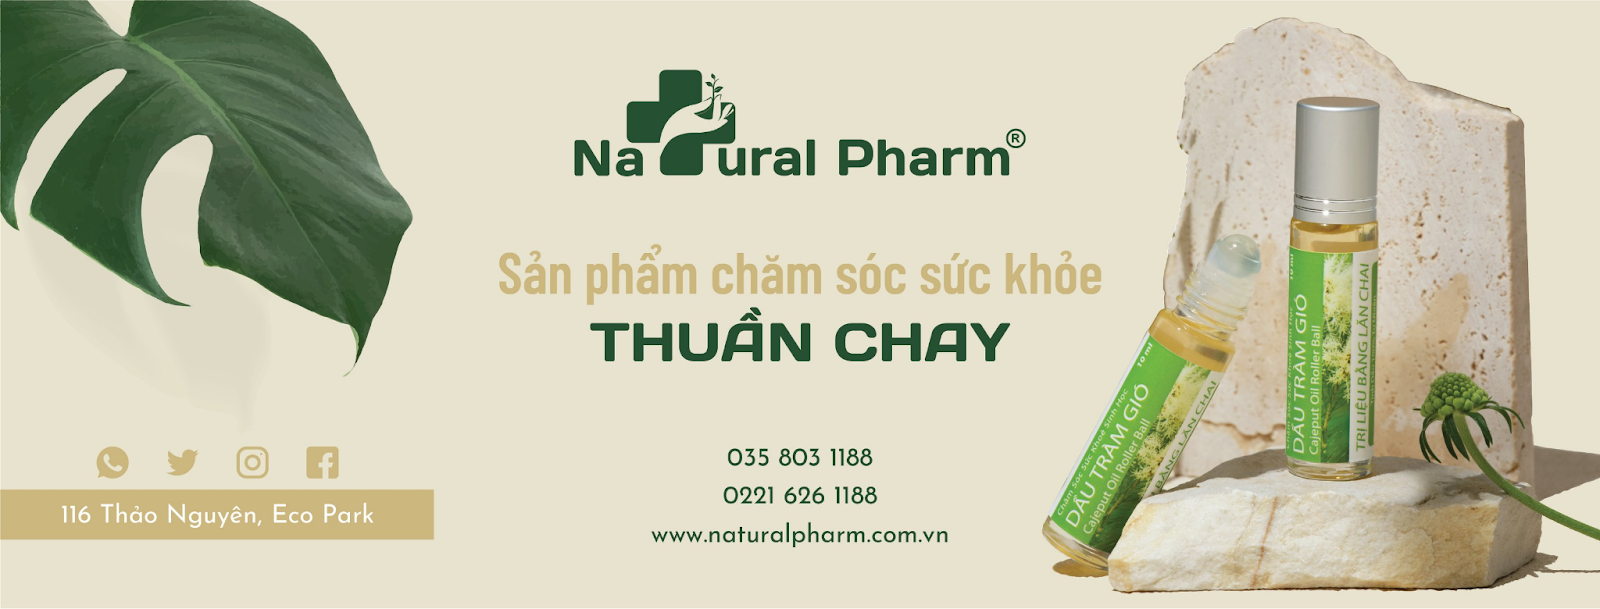 Natural Pharm - Sản phẩm chăm sóc sức khỏe thuần chay